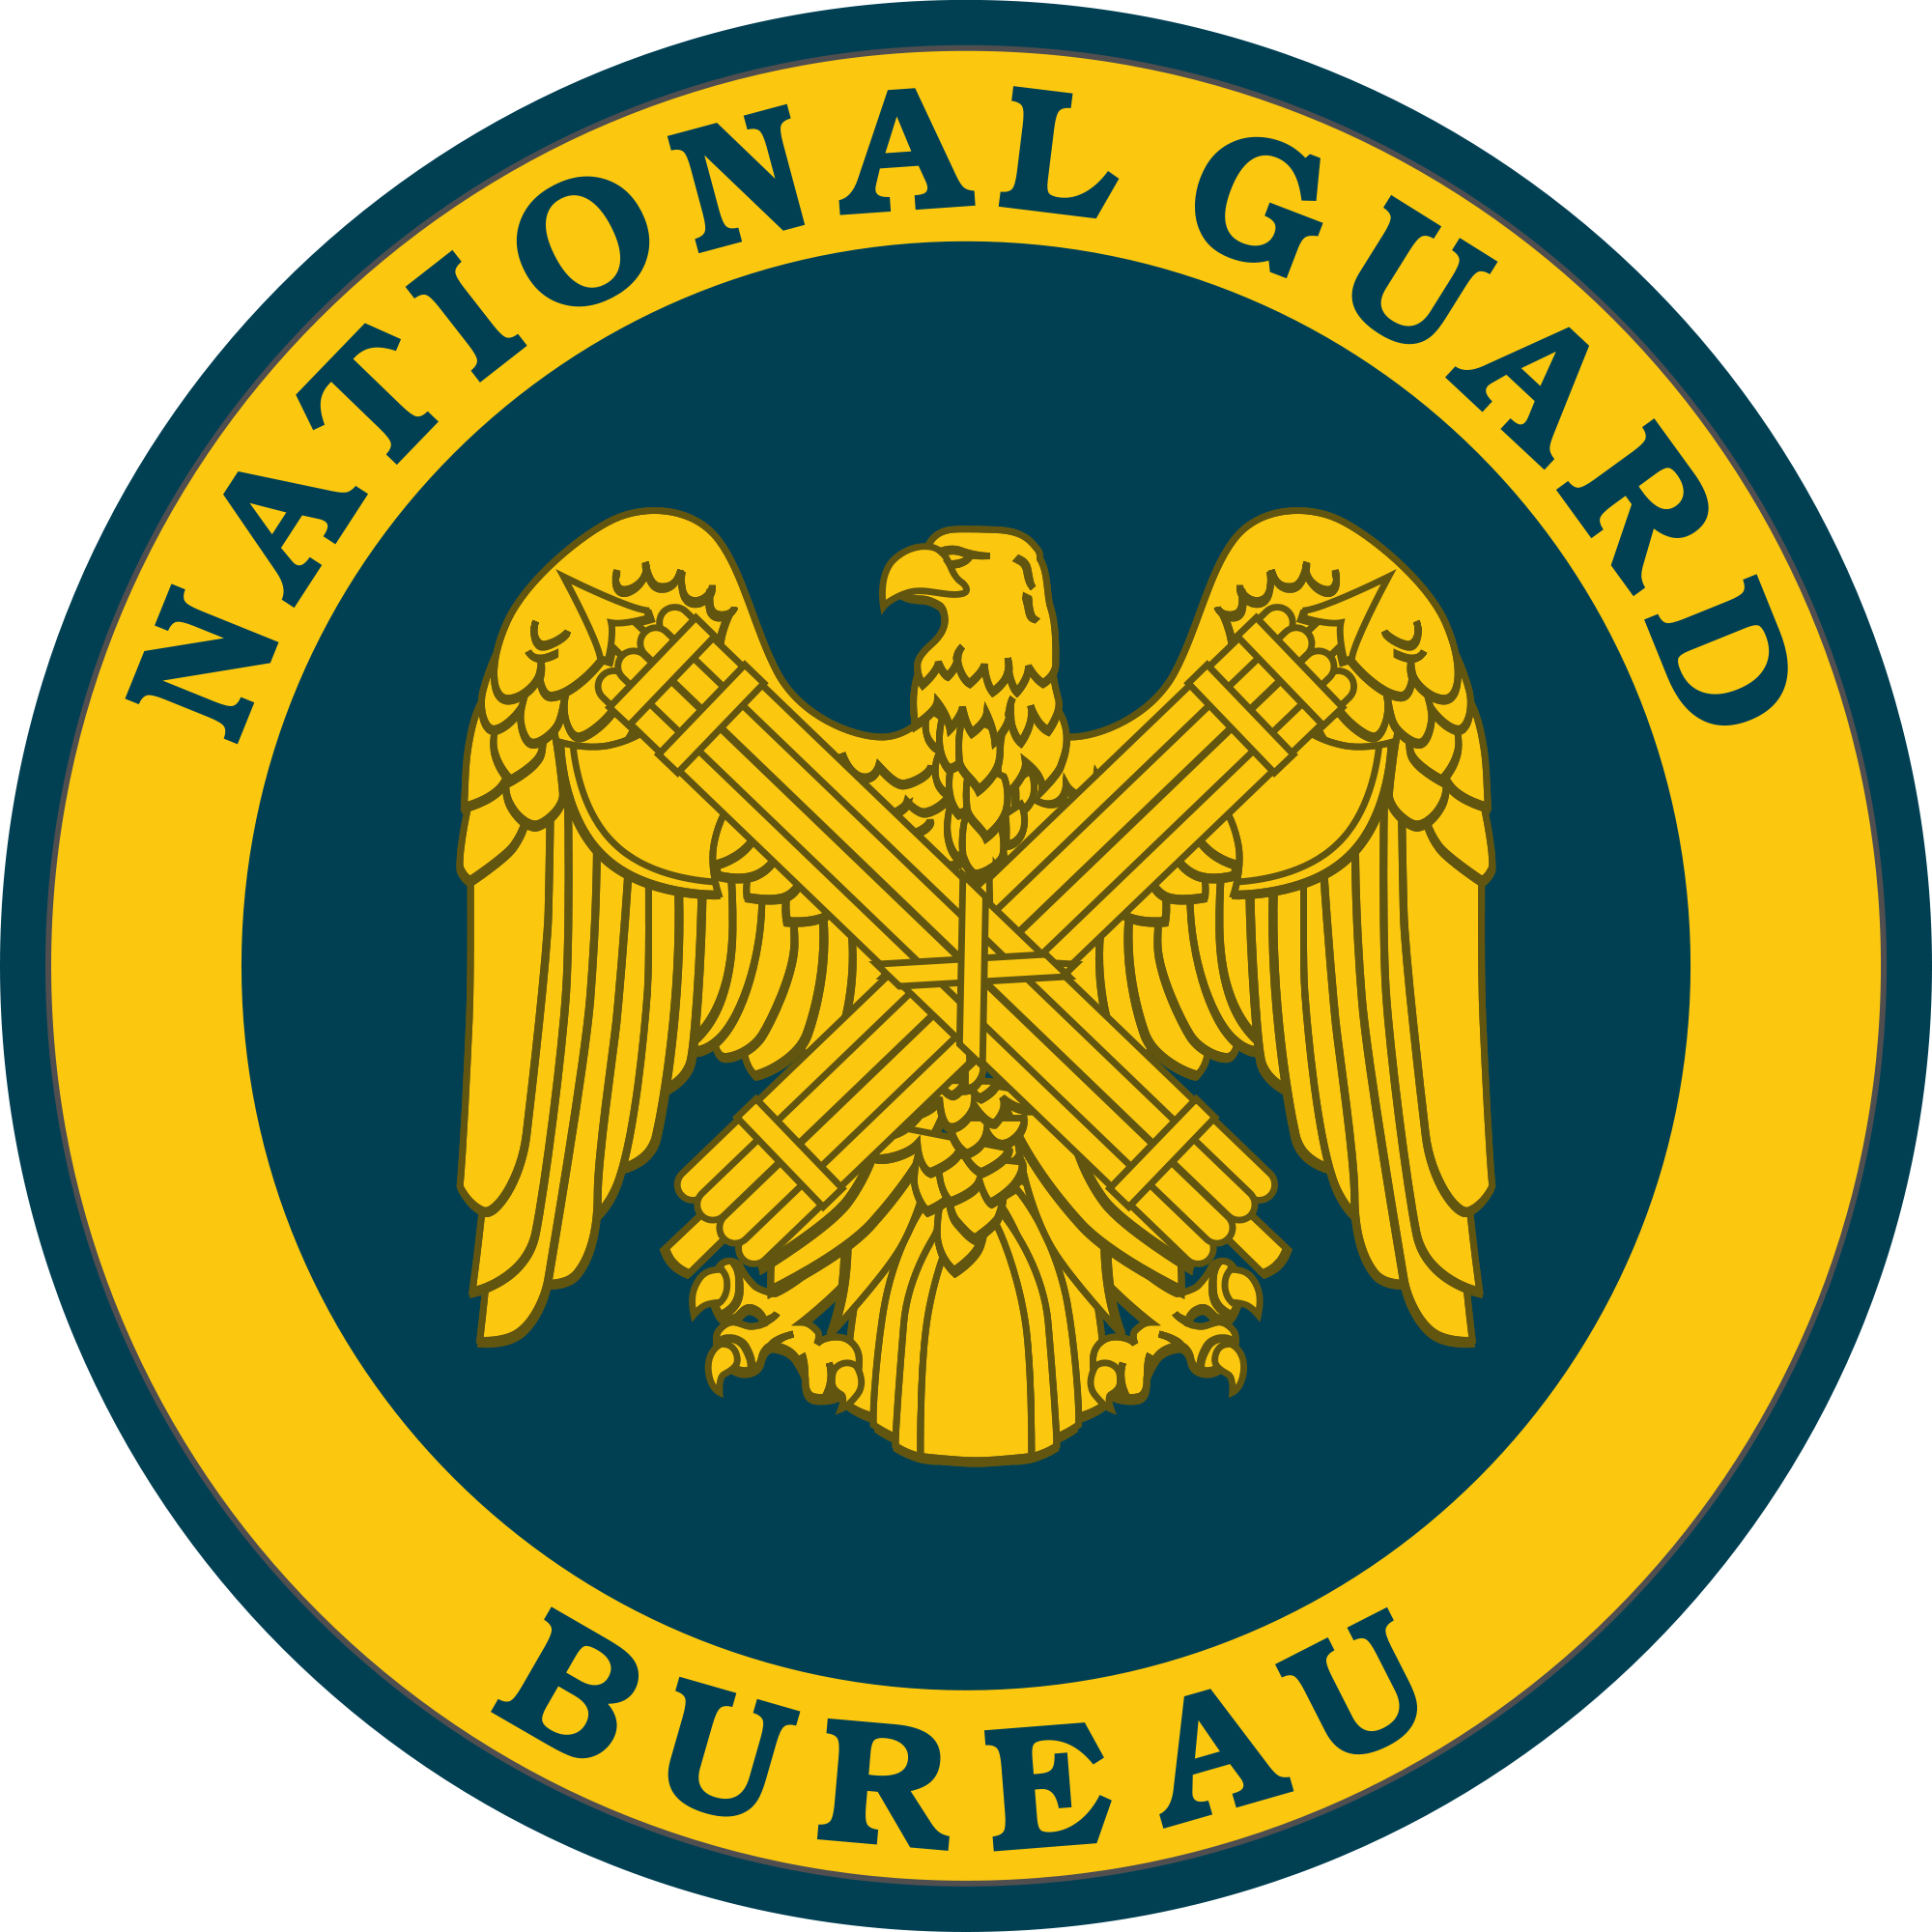 Open - Army National Guard Bureau (2000x2000)